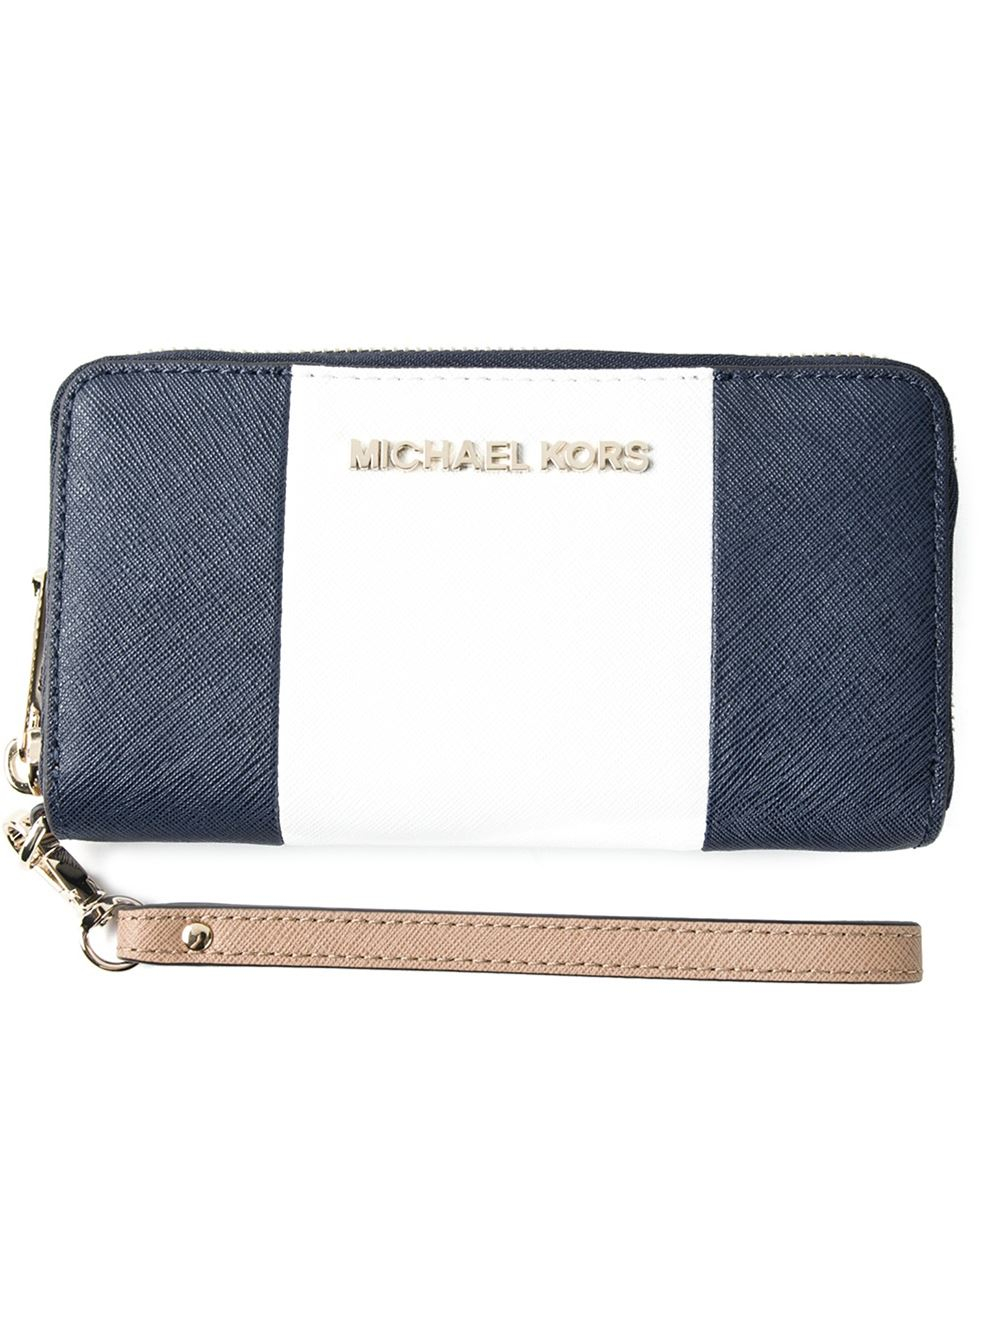 Michael Kors Blue Wallets For Women | NAR Media Kit